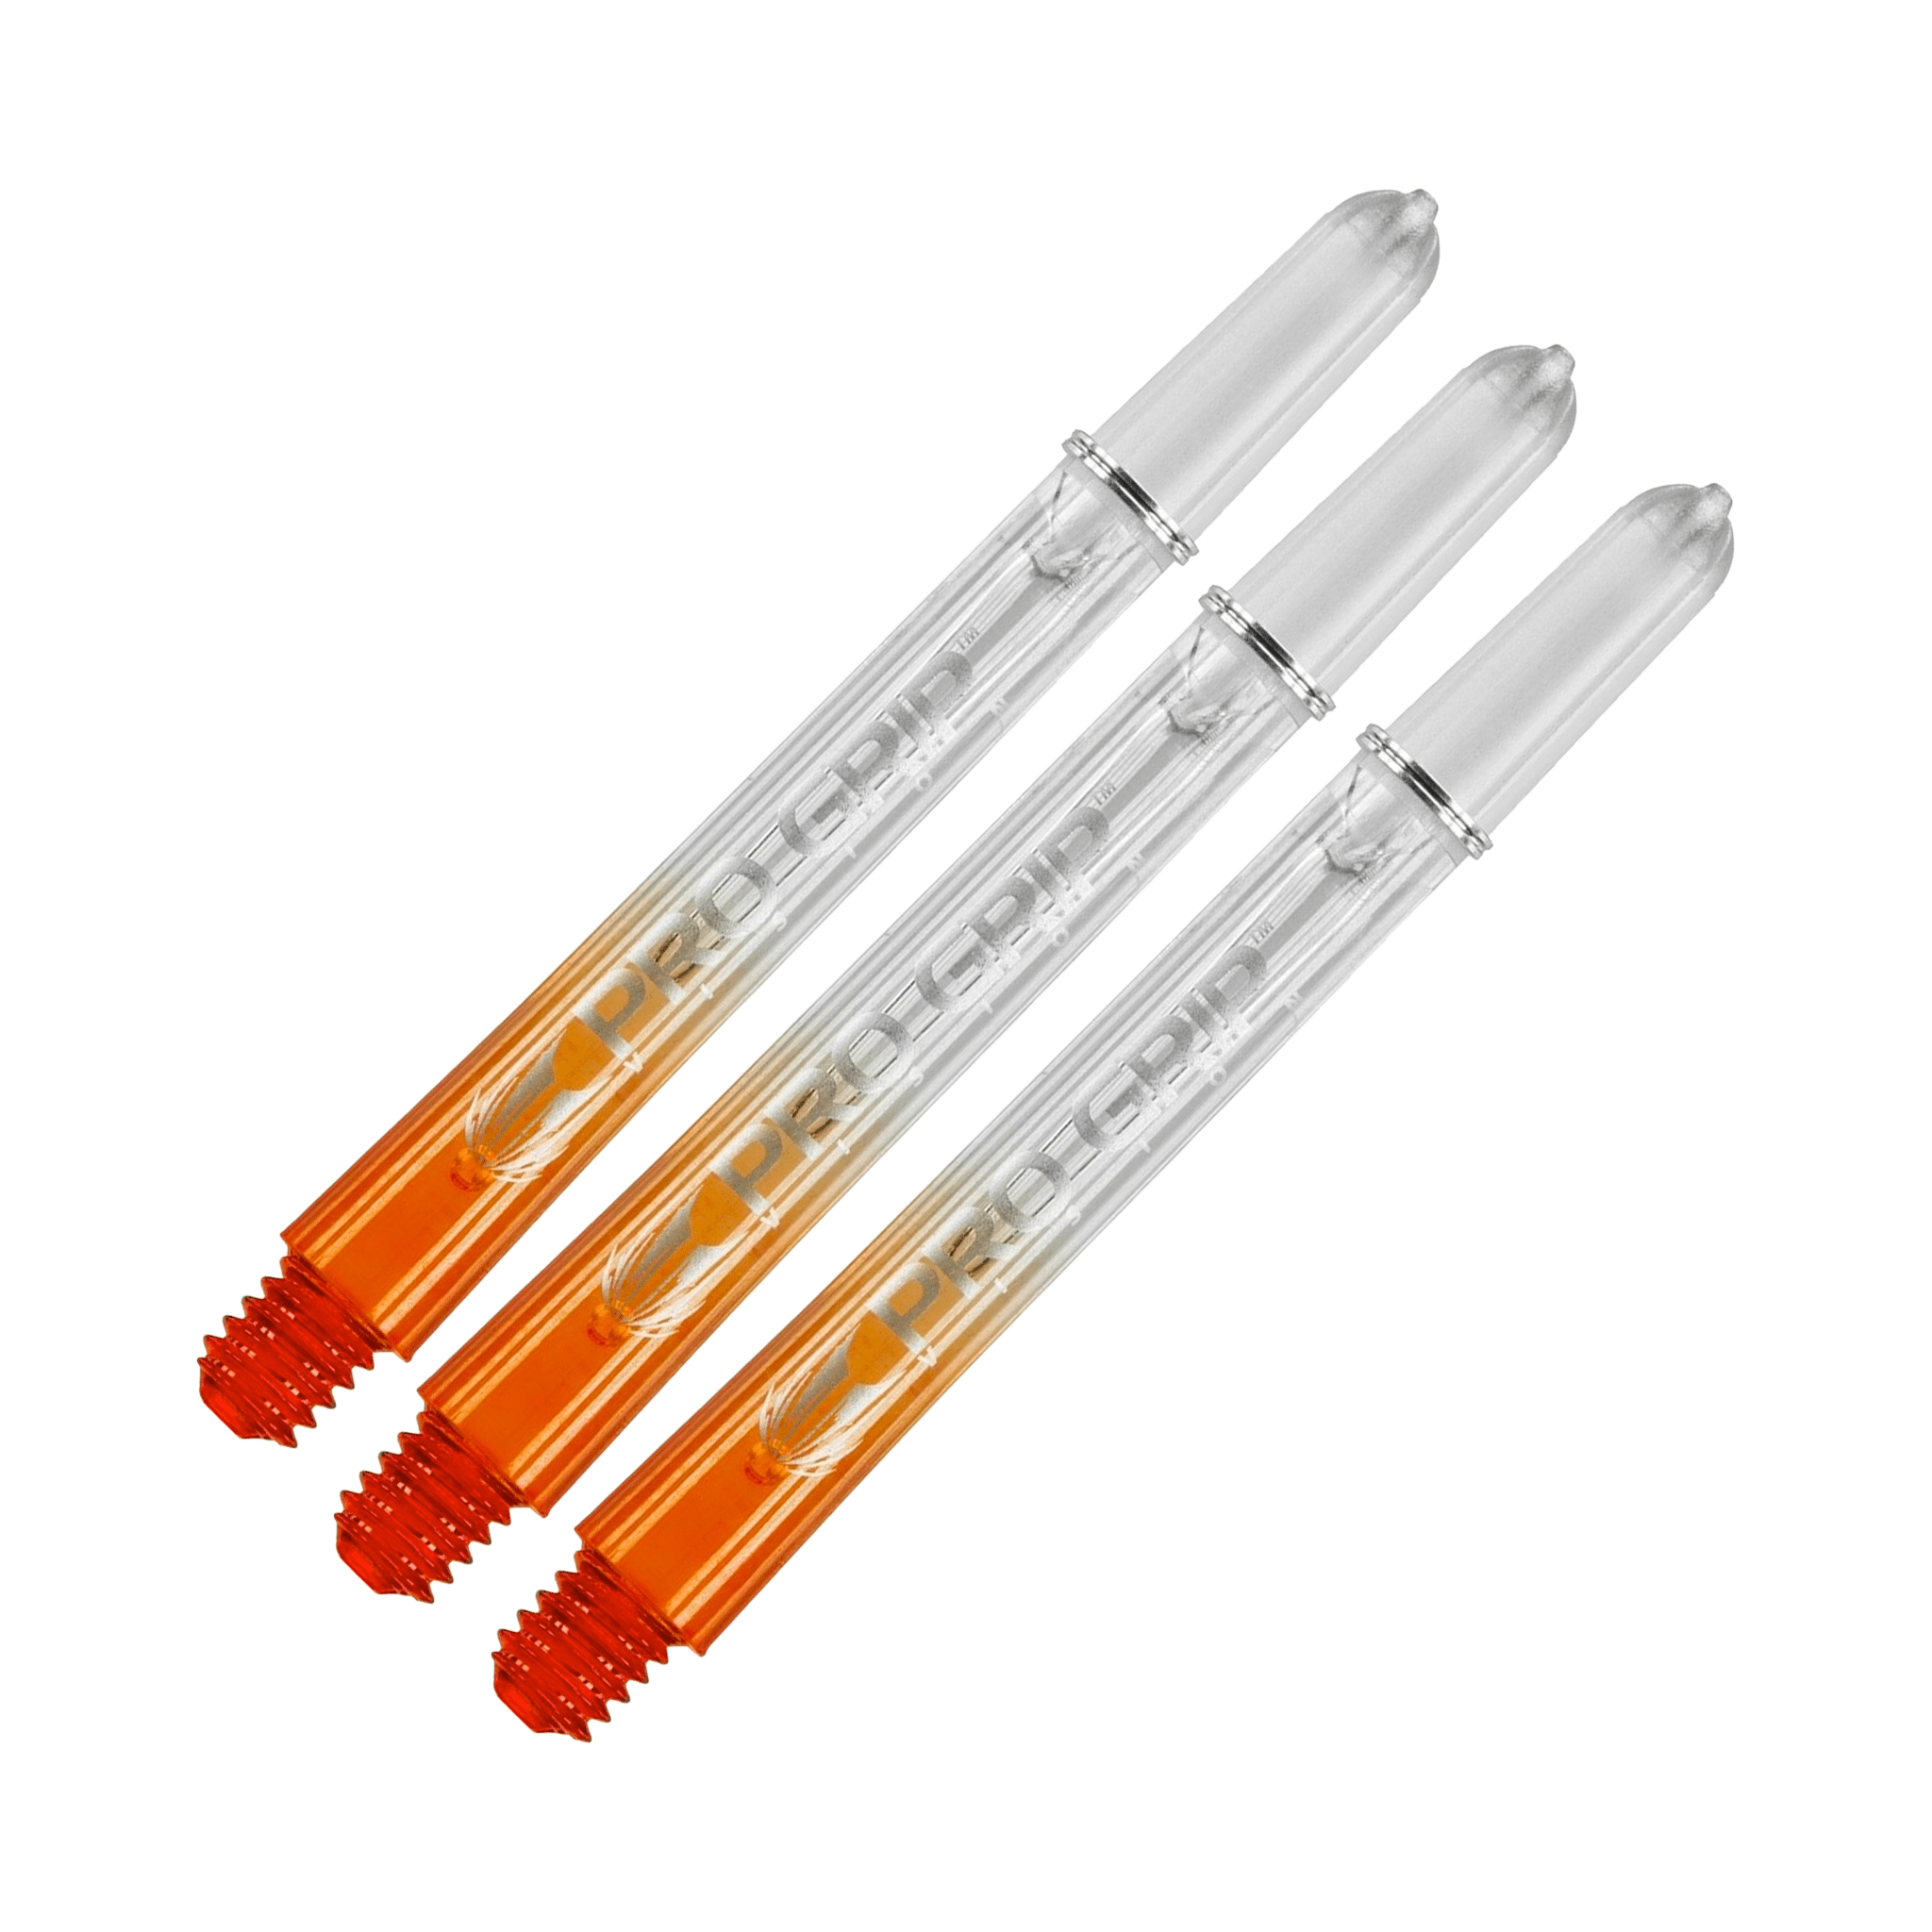 Target Pro Vision - Polycarbonate Dart Shafts Medium (48mm) / Orange Shafts